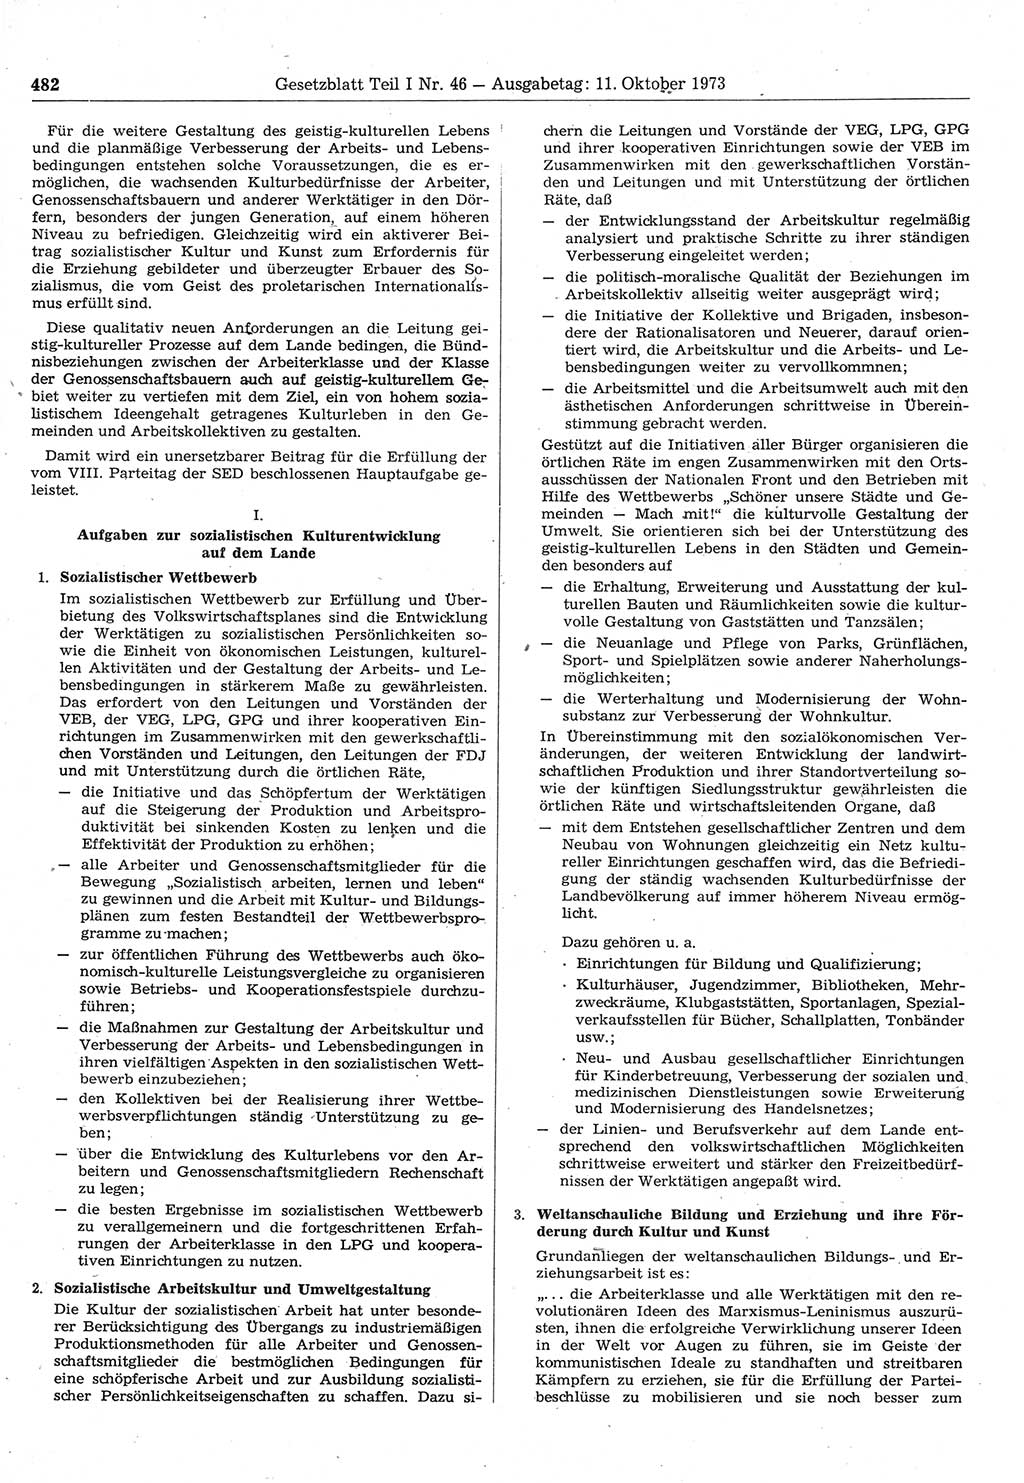 Gesetzblatt (GBl.) der Deutschen Demokratischen Republik (DDR) Teil Ⅰ 1973, Seite 482 (GBl. DDR Ⅰ 1973, S. 482)